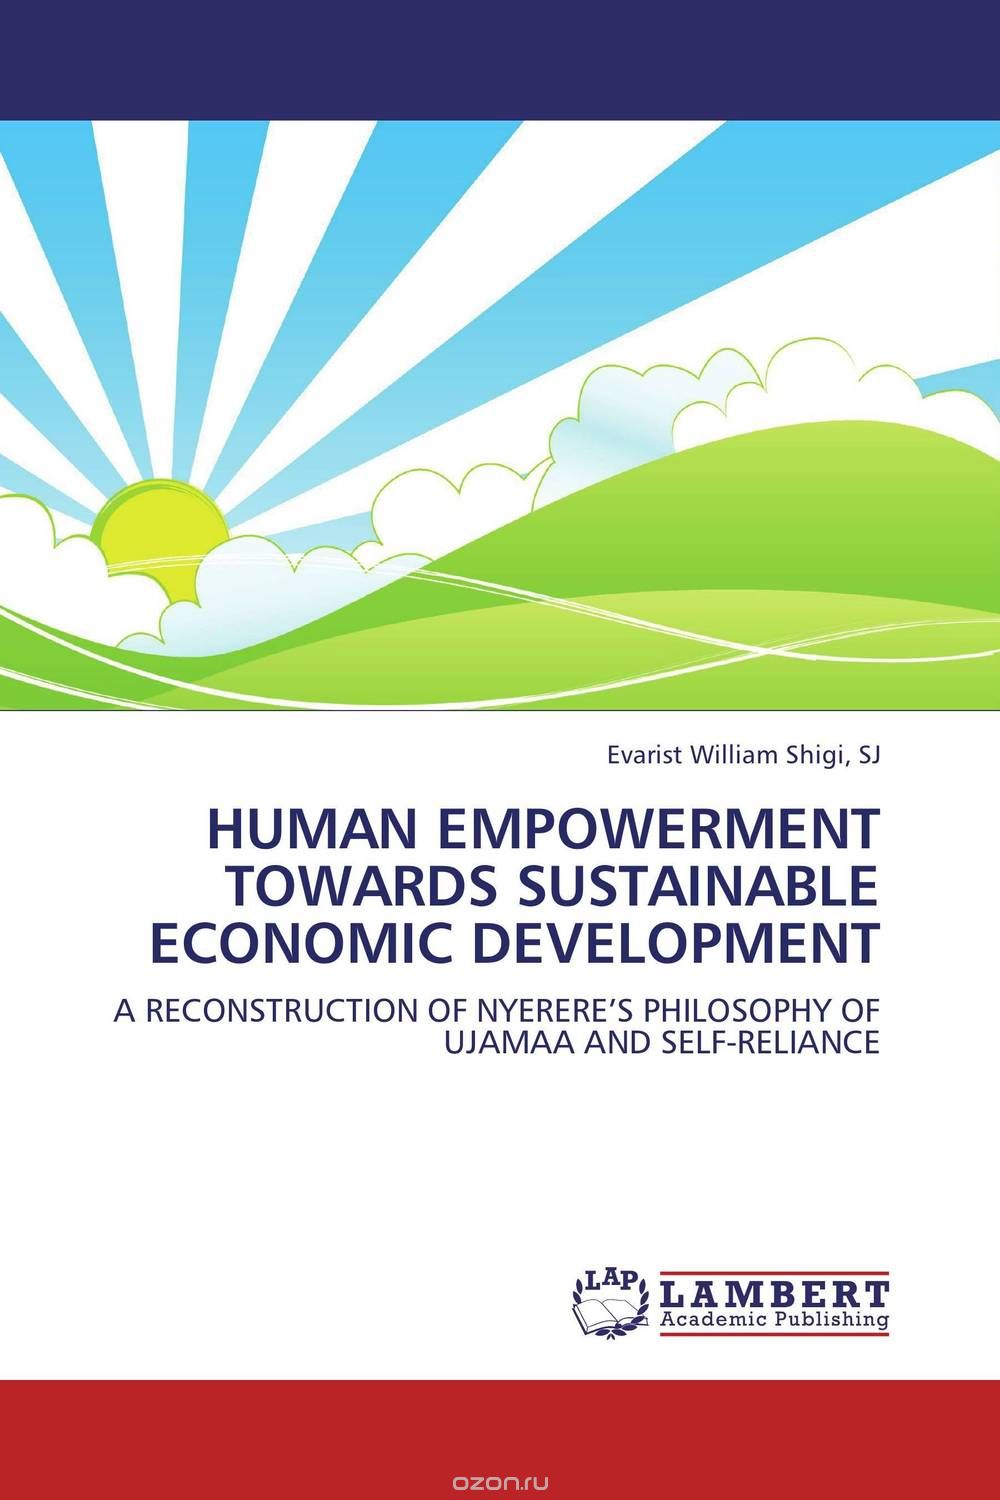 Скачать книгу "Human empowerment towards sustainable economic development"